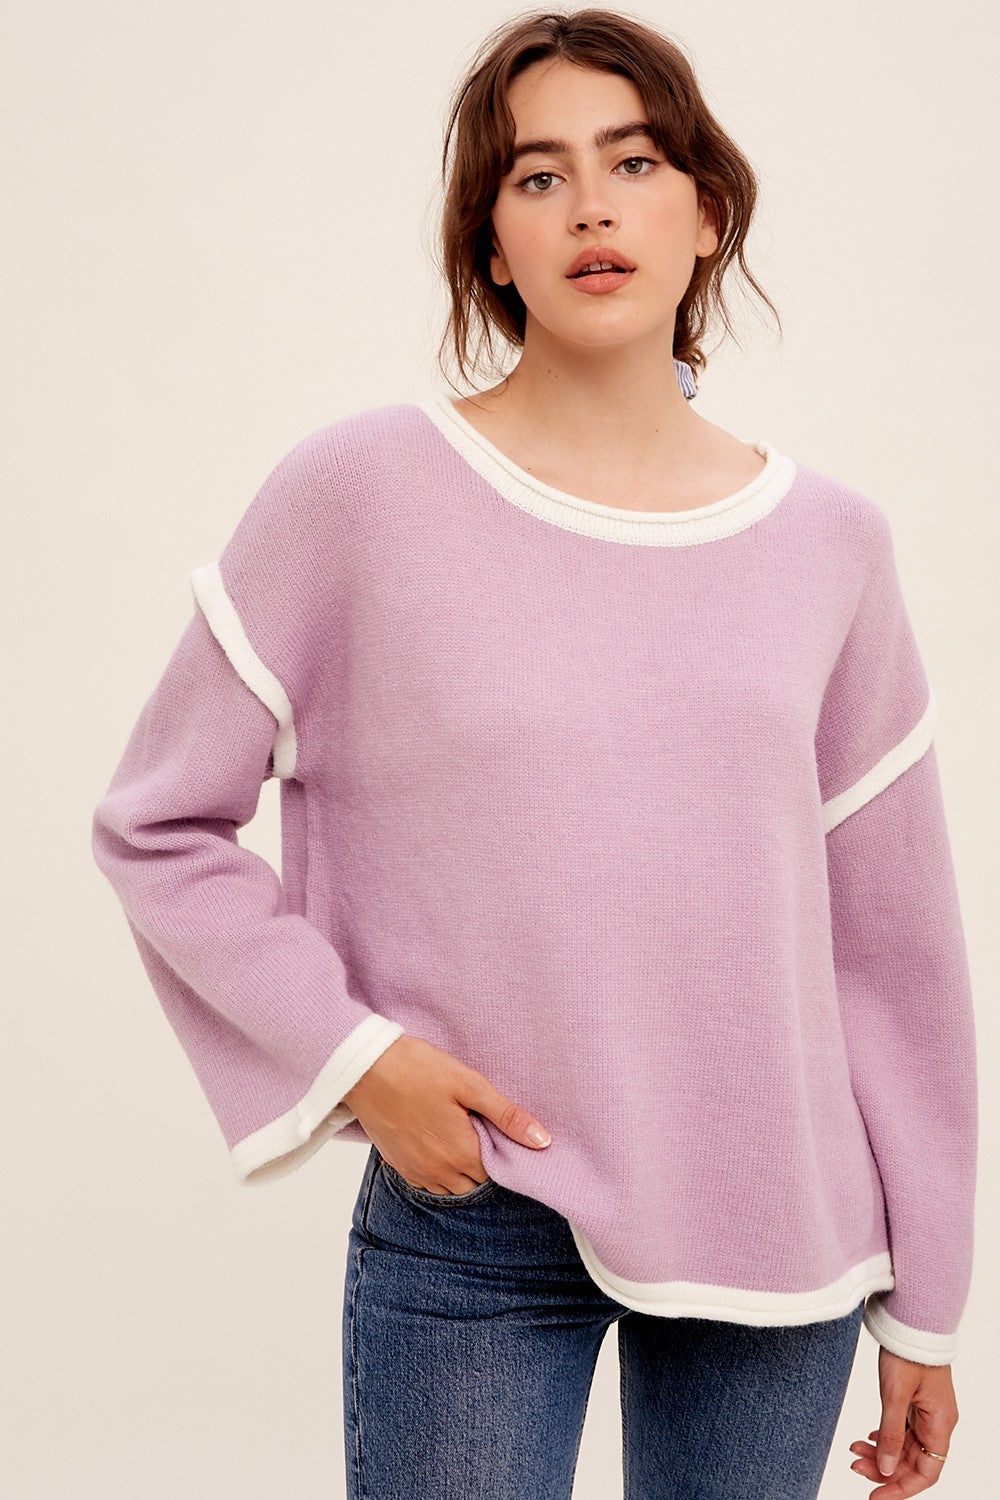 Lavender & White Cozy Sweater